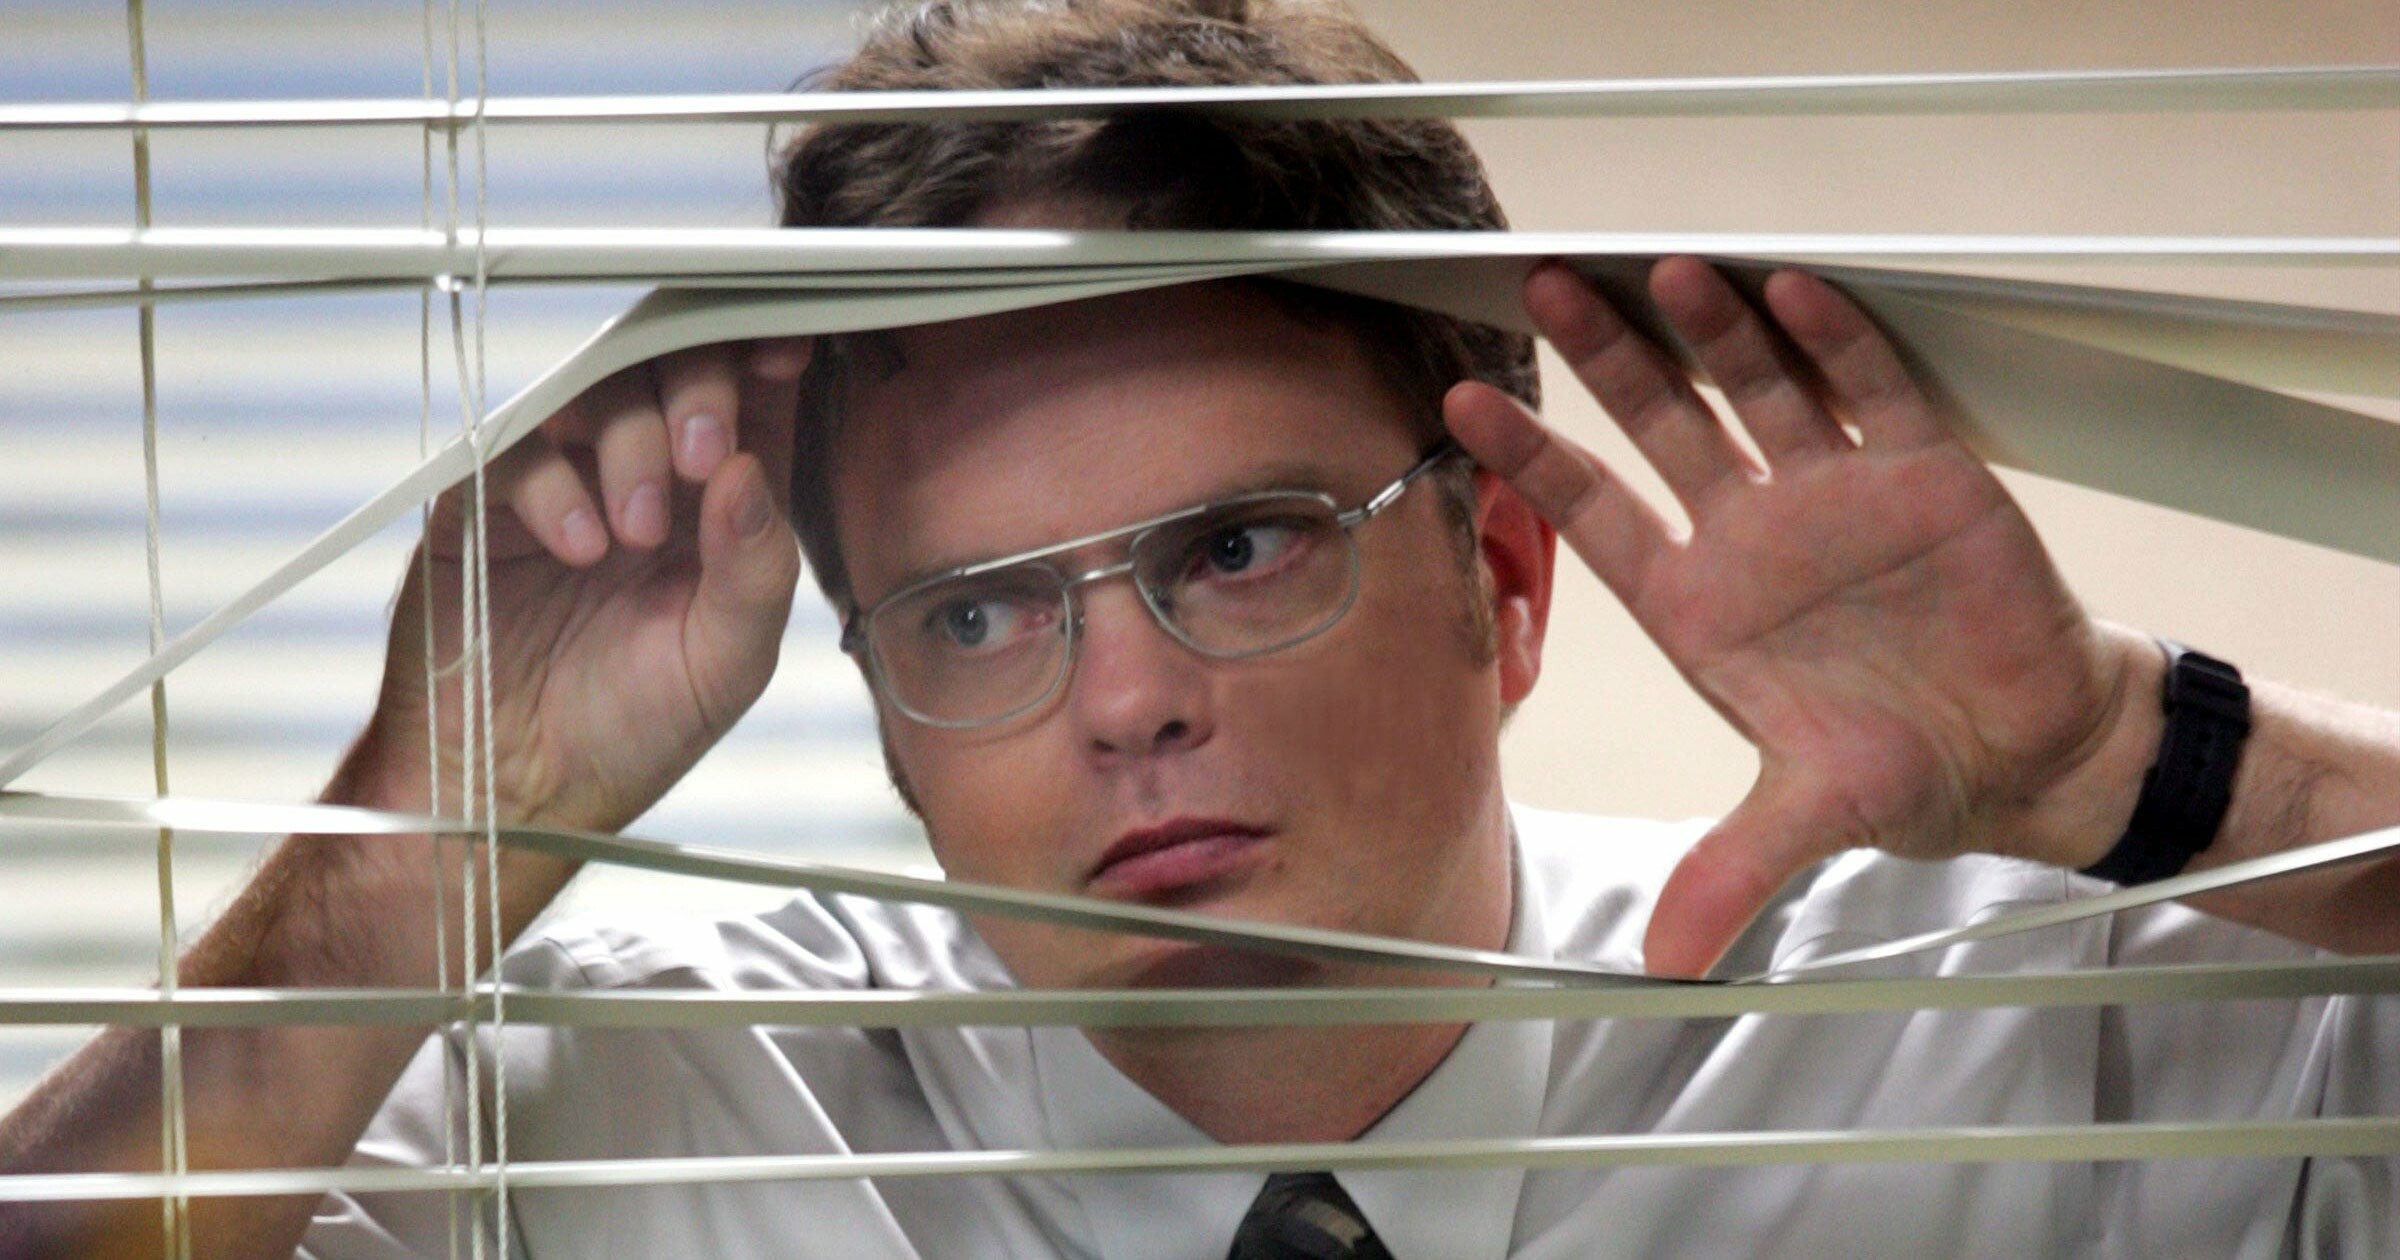 The Office (TV Series): Dwight Schrute, portrayed by Rainn Wilson, a salesman at Dunder Mifflin. 2400x1260 HD Background.